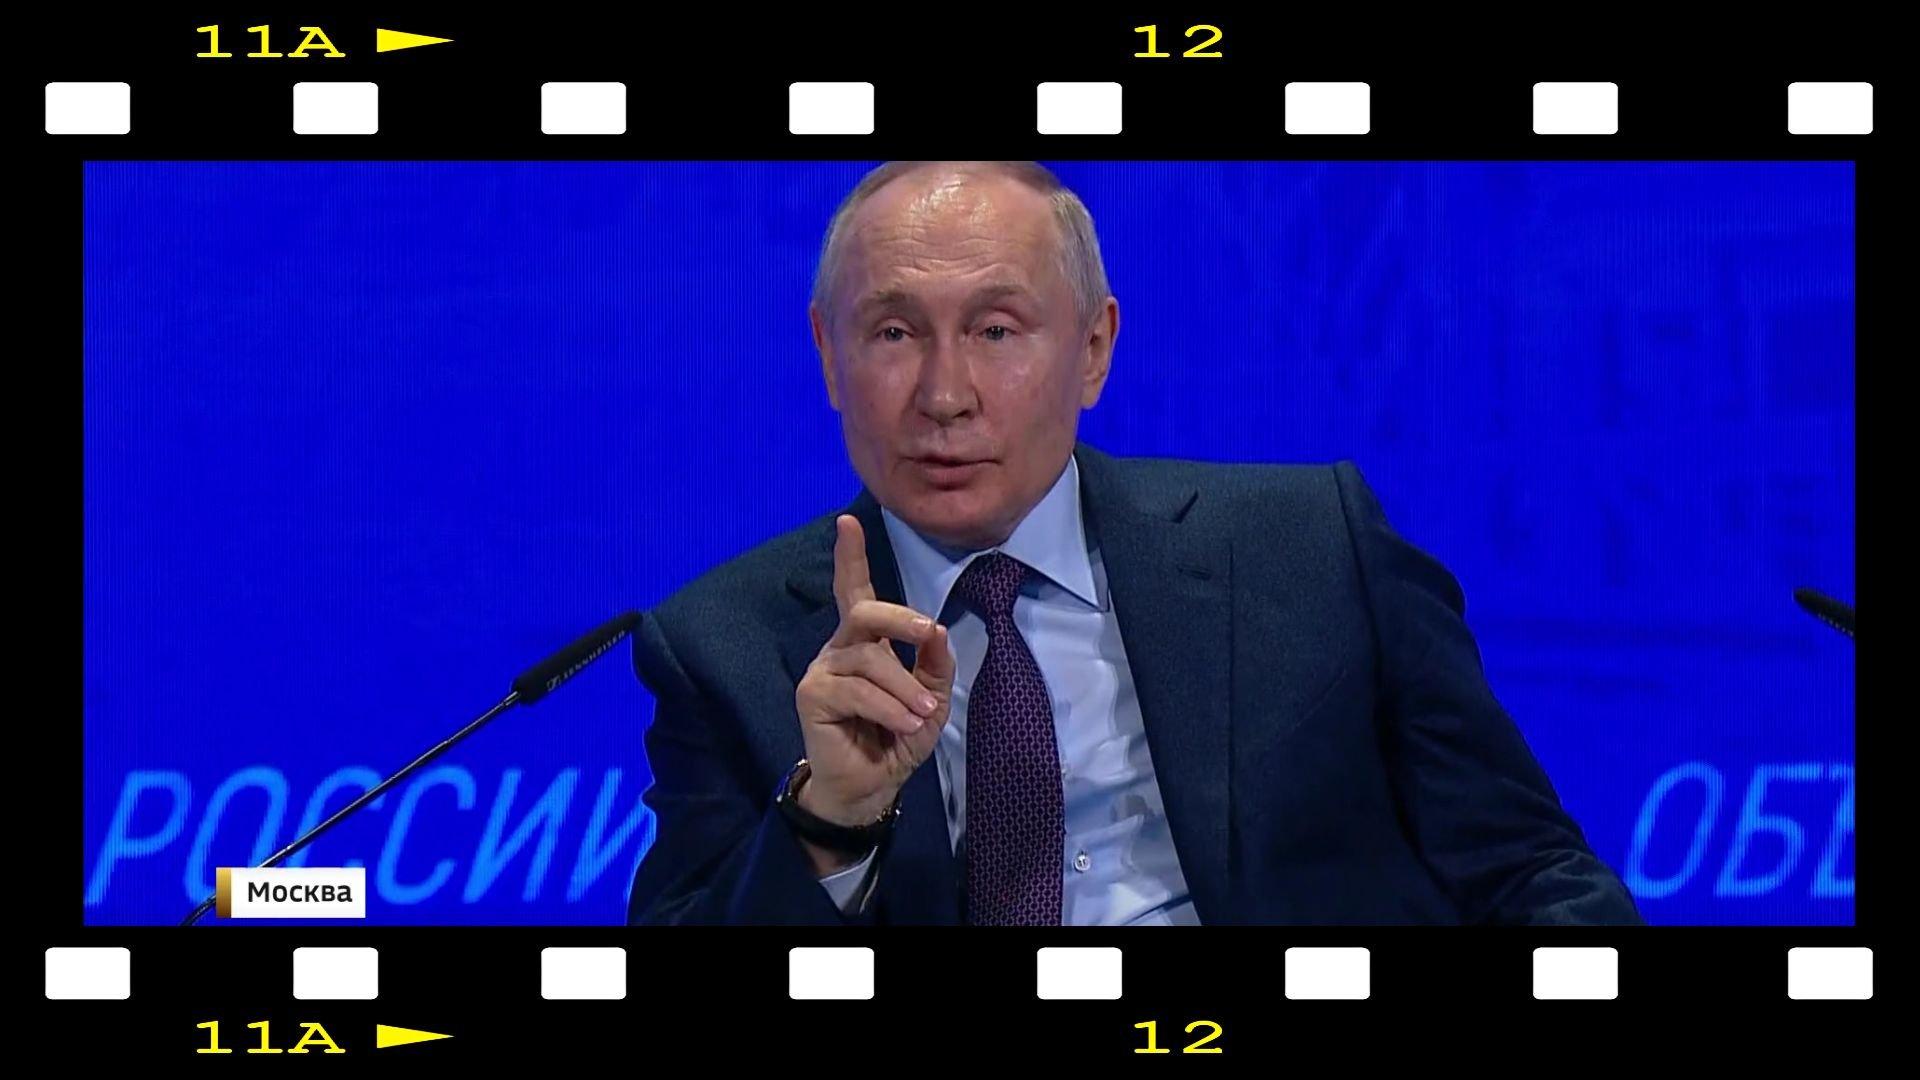 Kadr: zdjecie Putina w ramce filmowej. Putin ma uniesiony palec